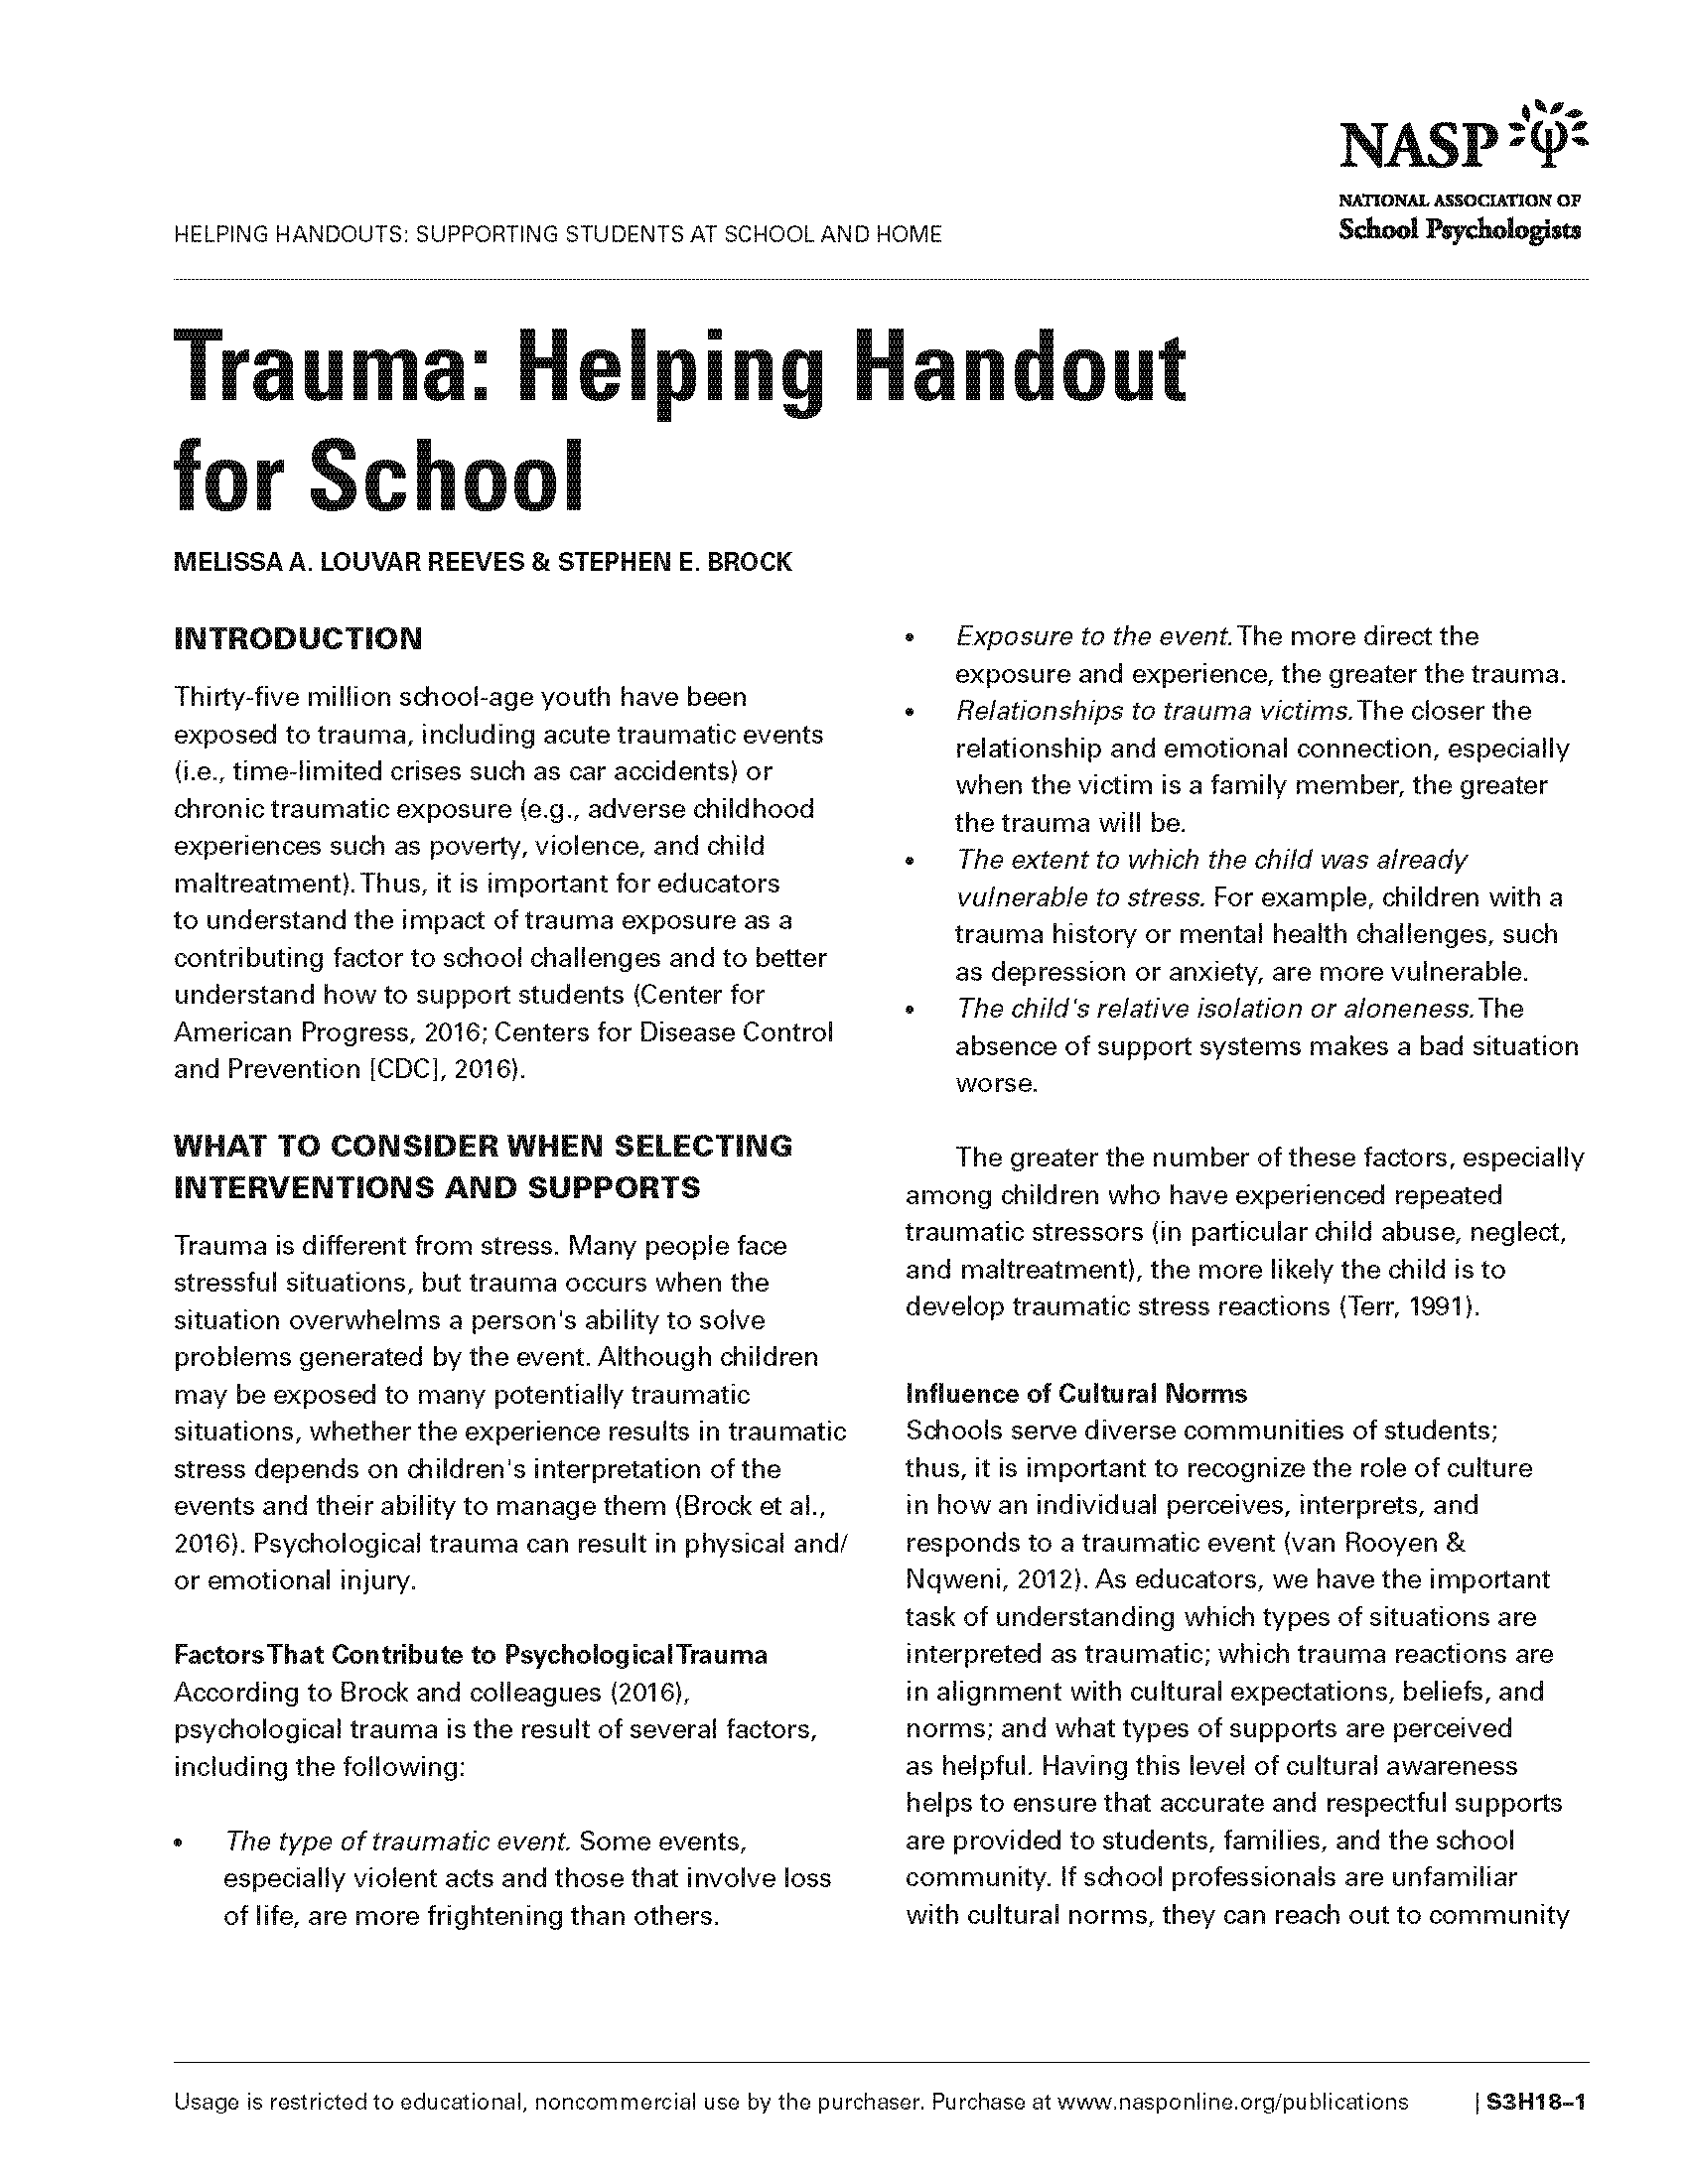 Trauma: Helping Handout for School   